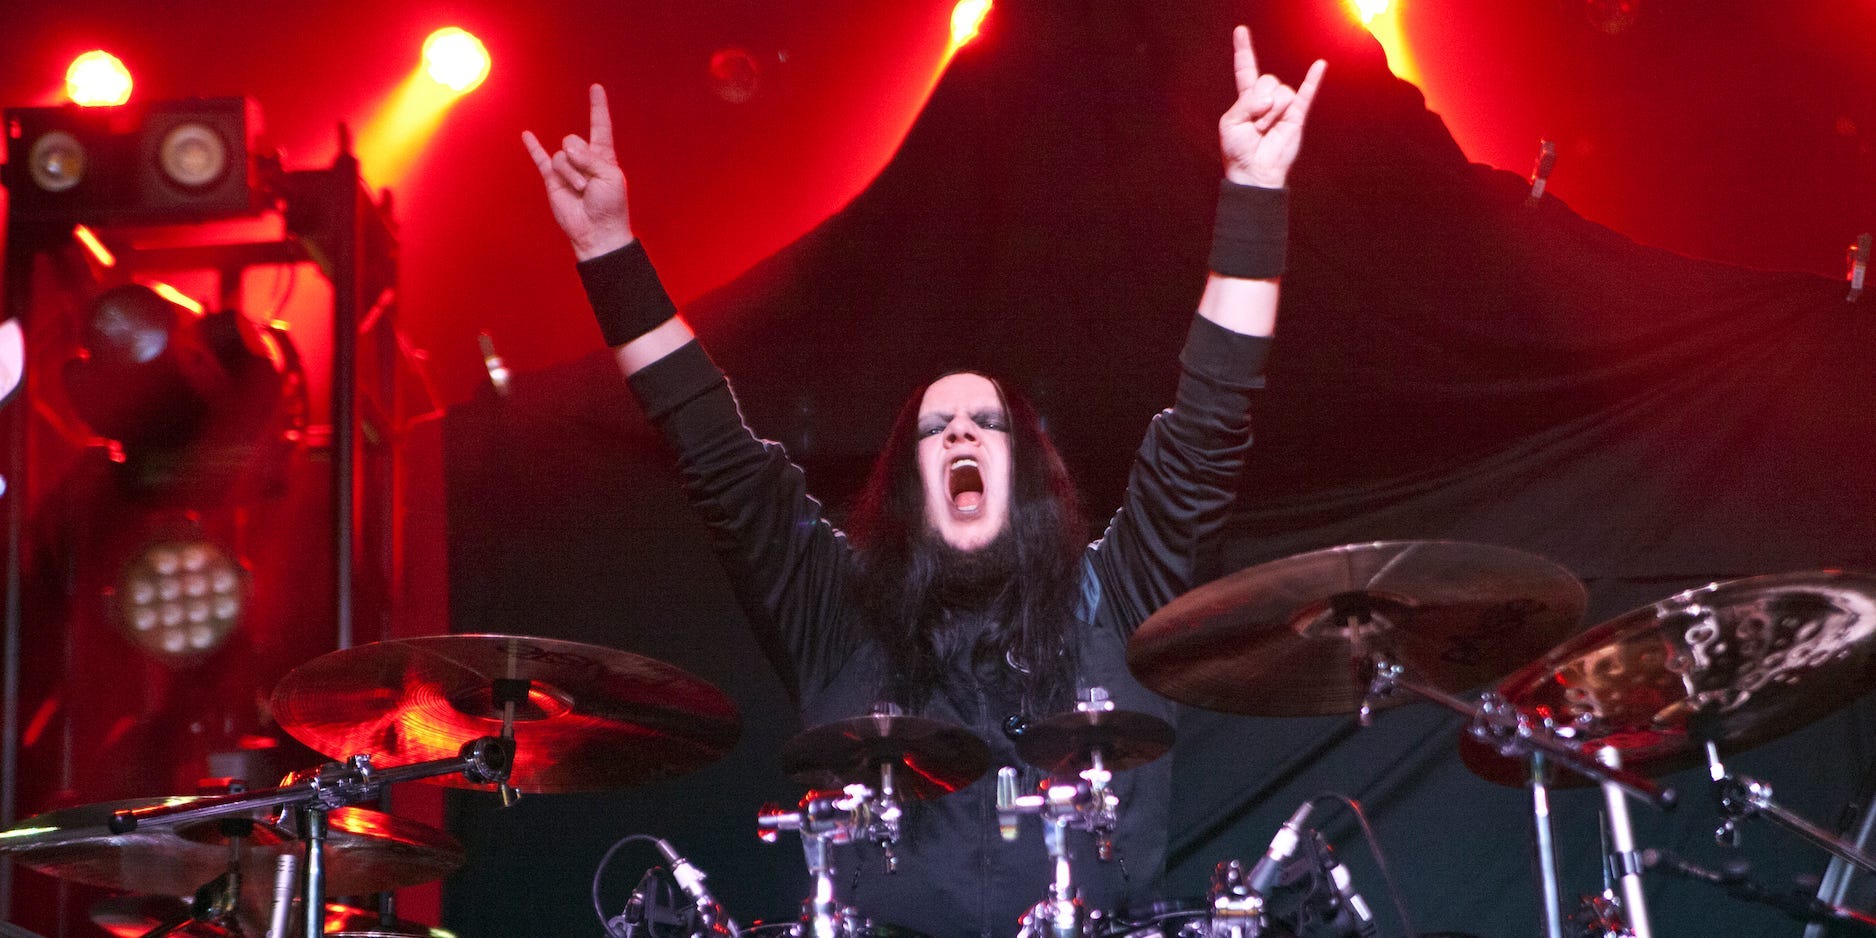 Joey Jordison raises his arms as he performs behind his drumkit